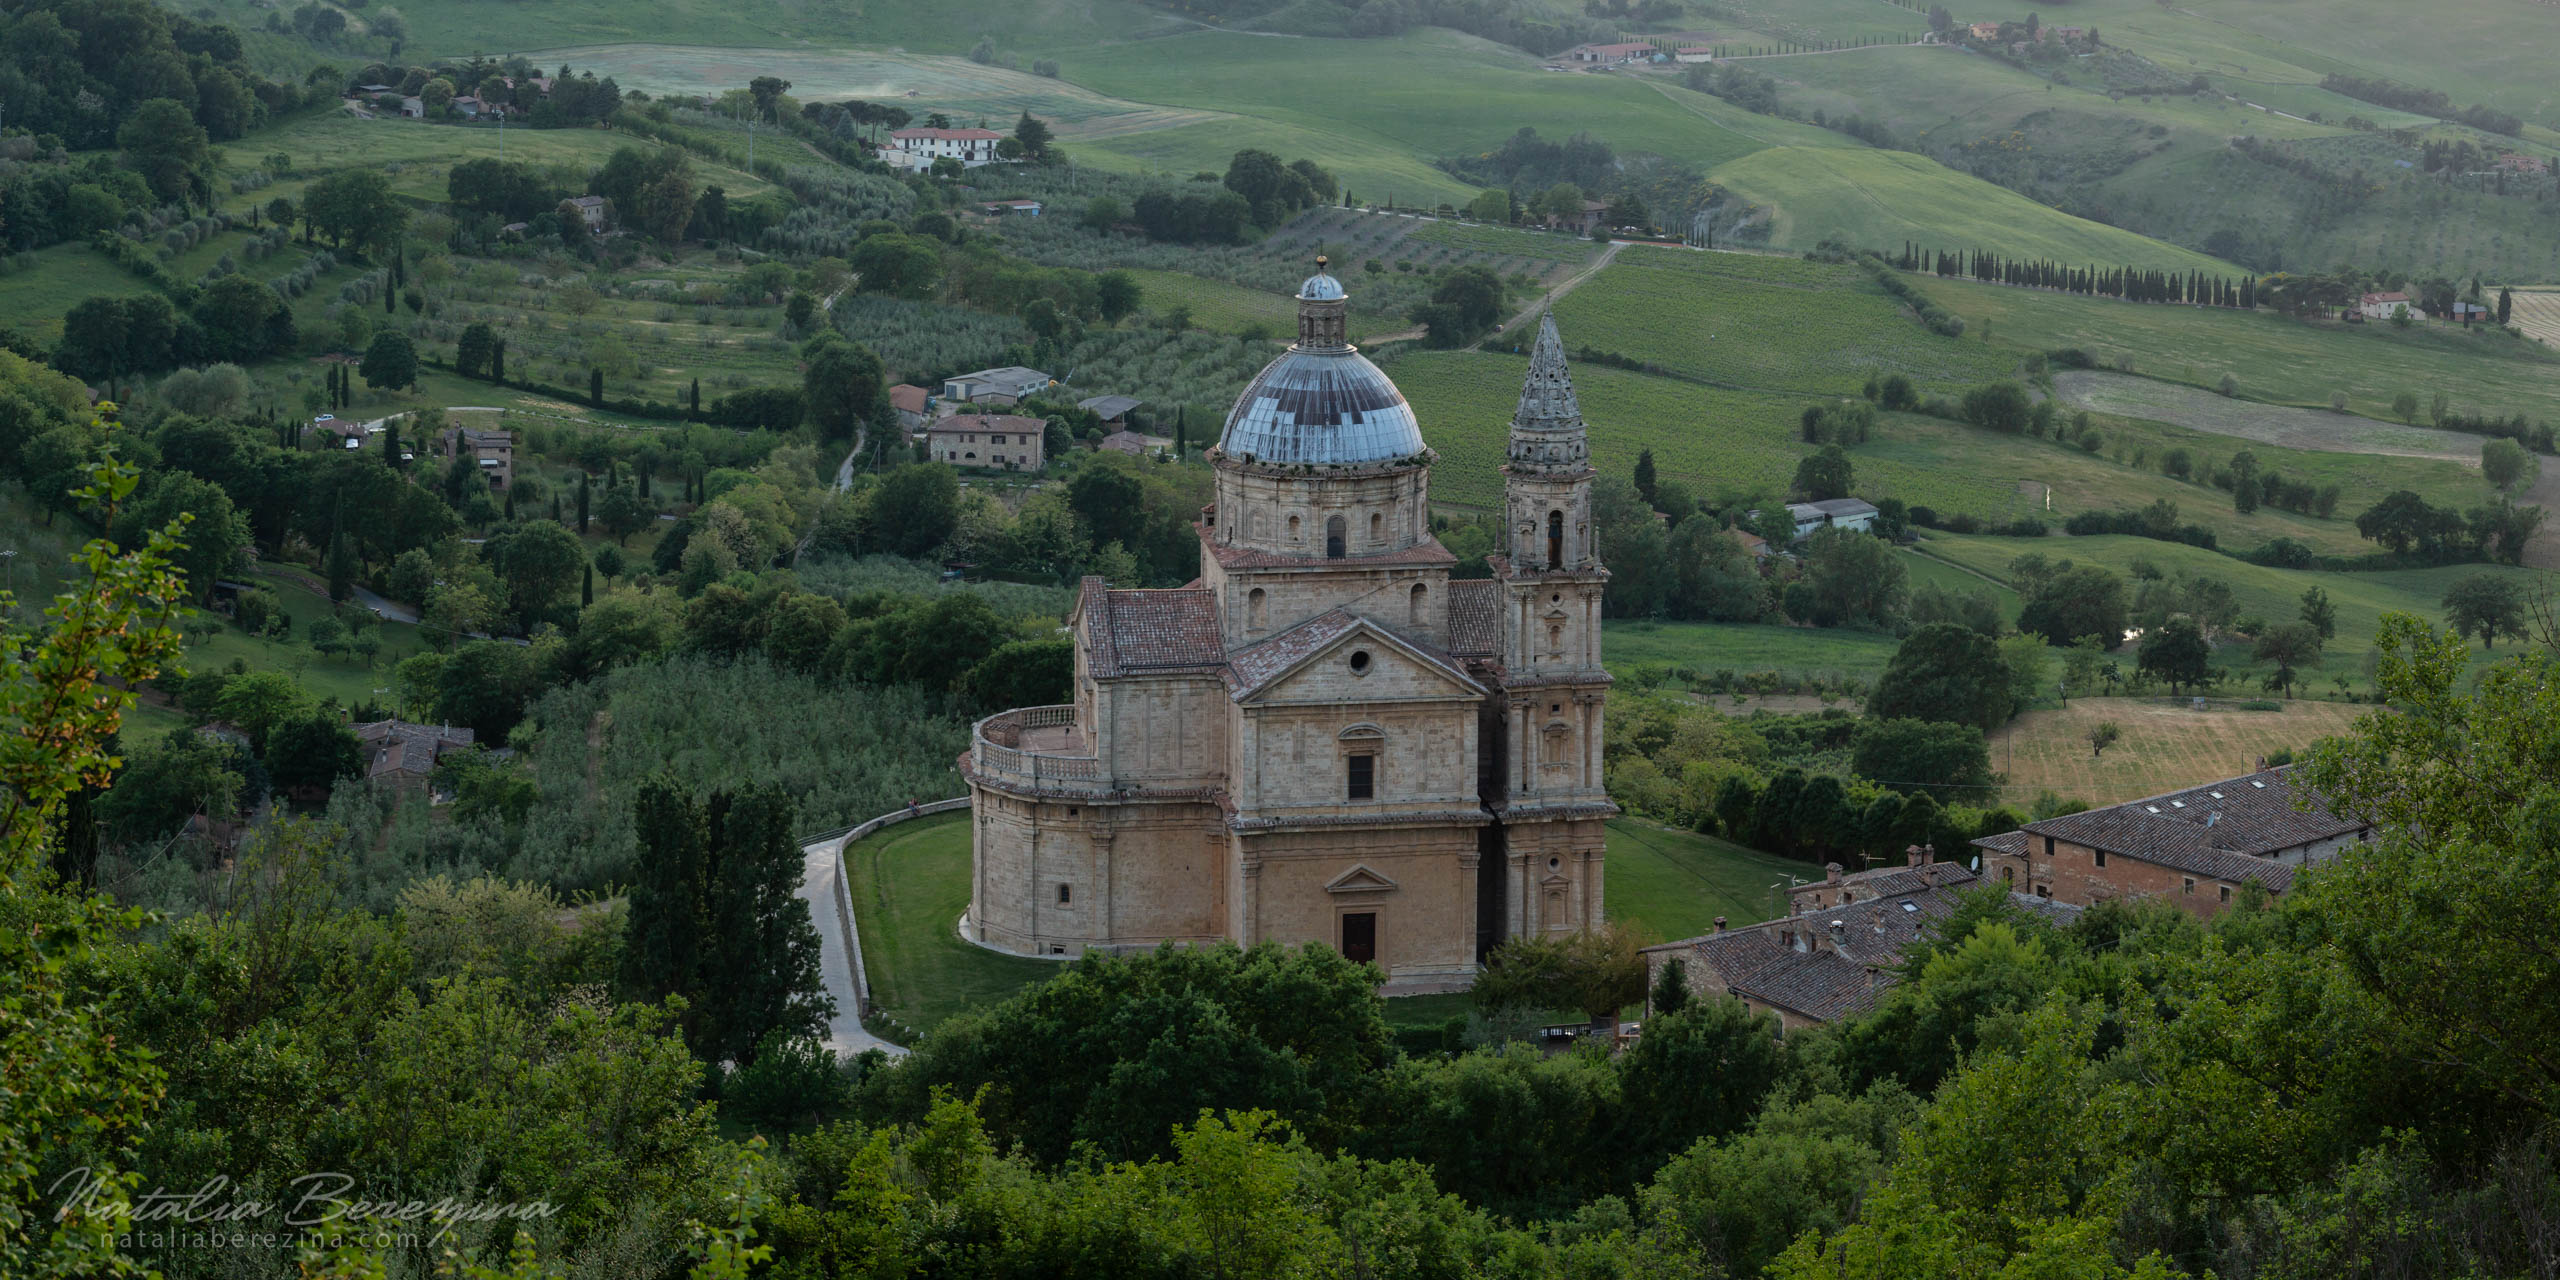 Tuscany, Italy, cityscape, church, 2x1 TU1-NBDK1U2213-P - Tuscany, Italy - Natalia Berezina Photography